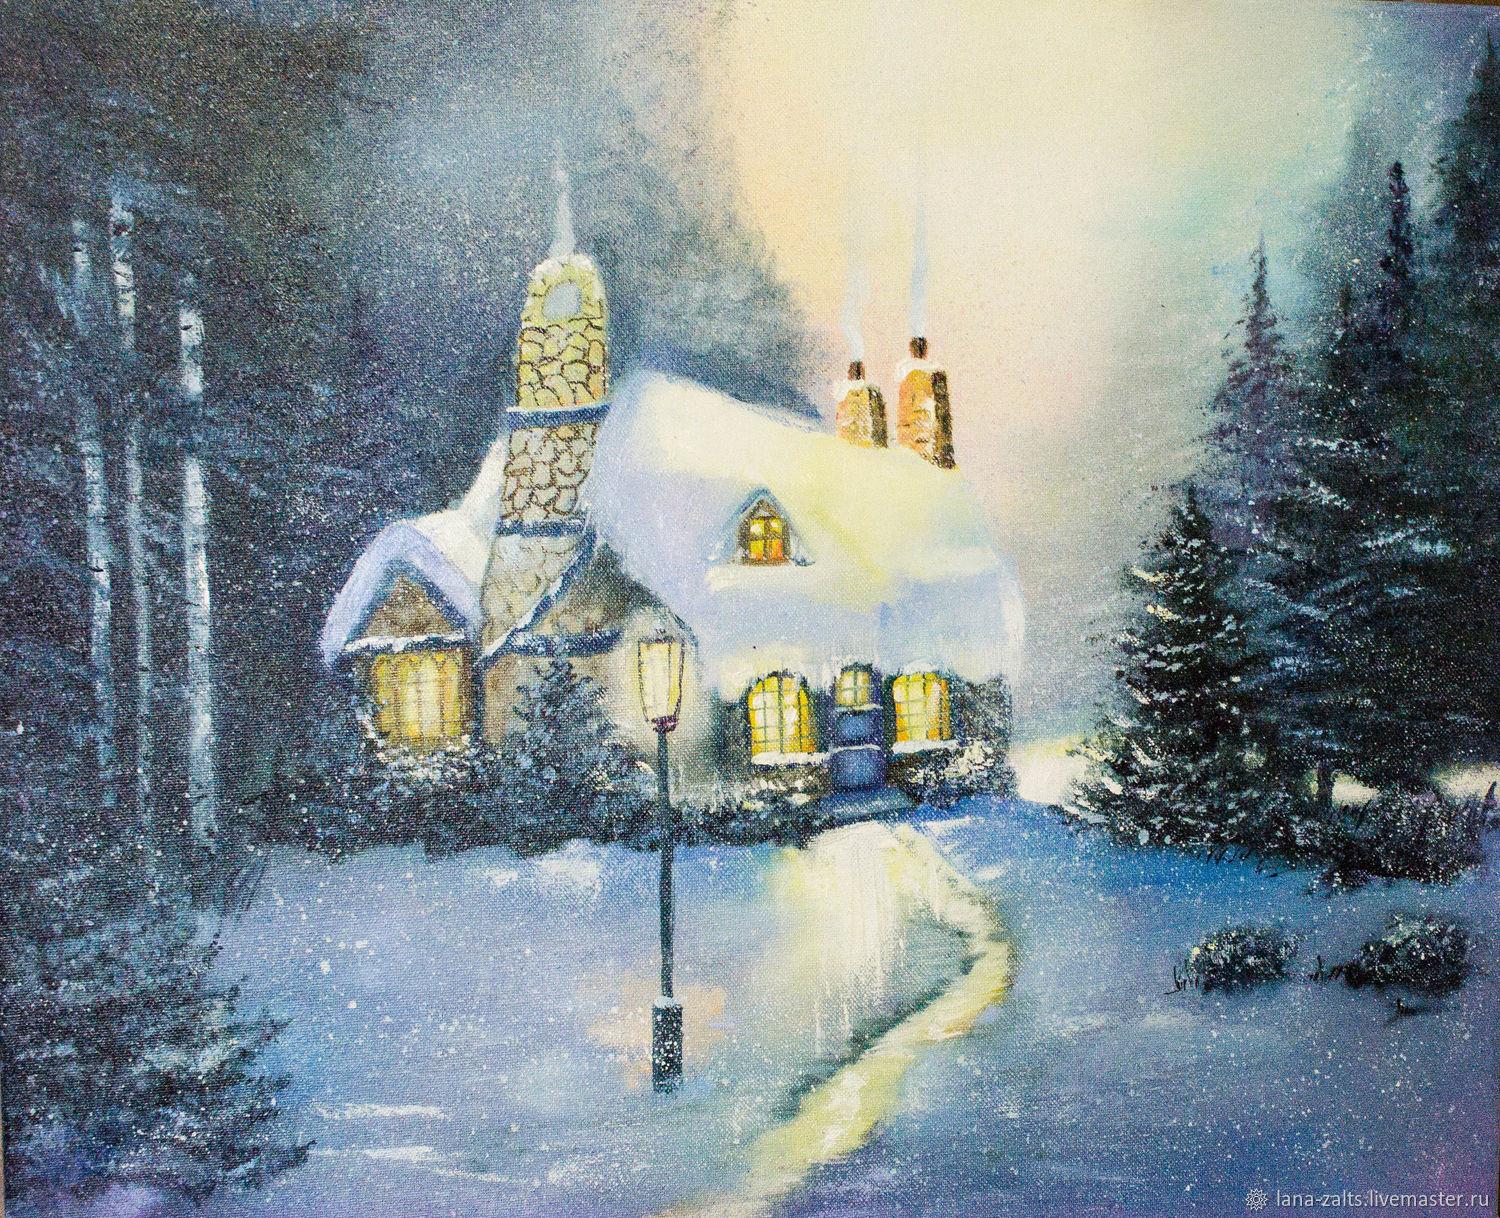 Сказочный домик в лесу зимой: 78 фото